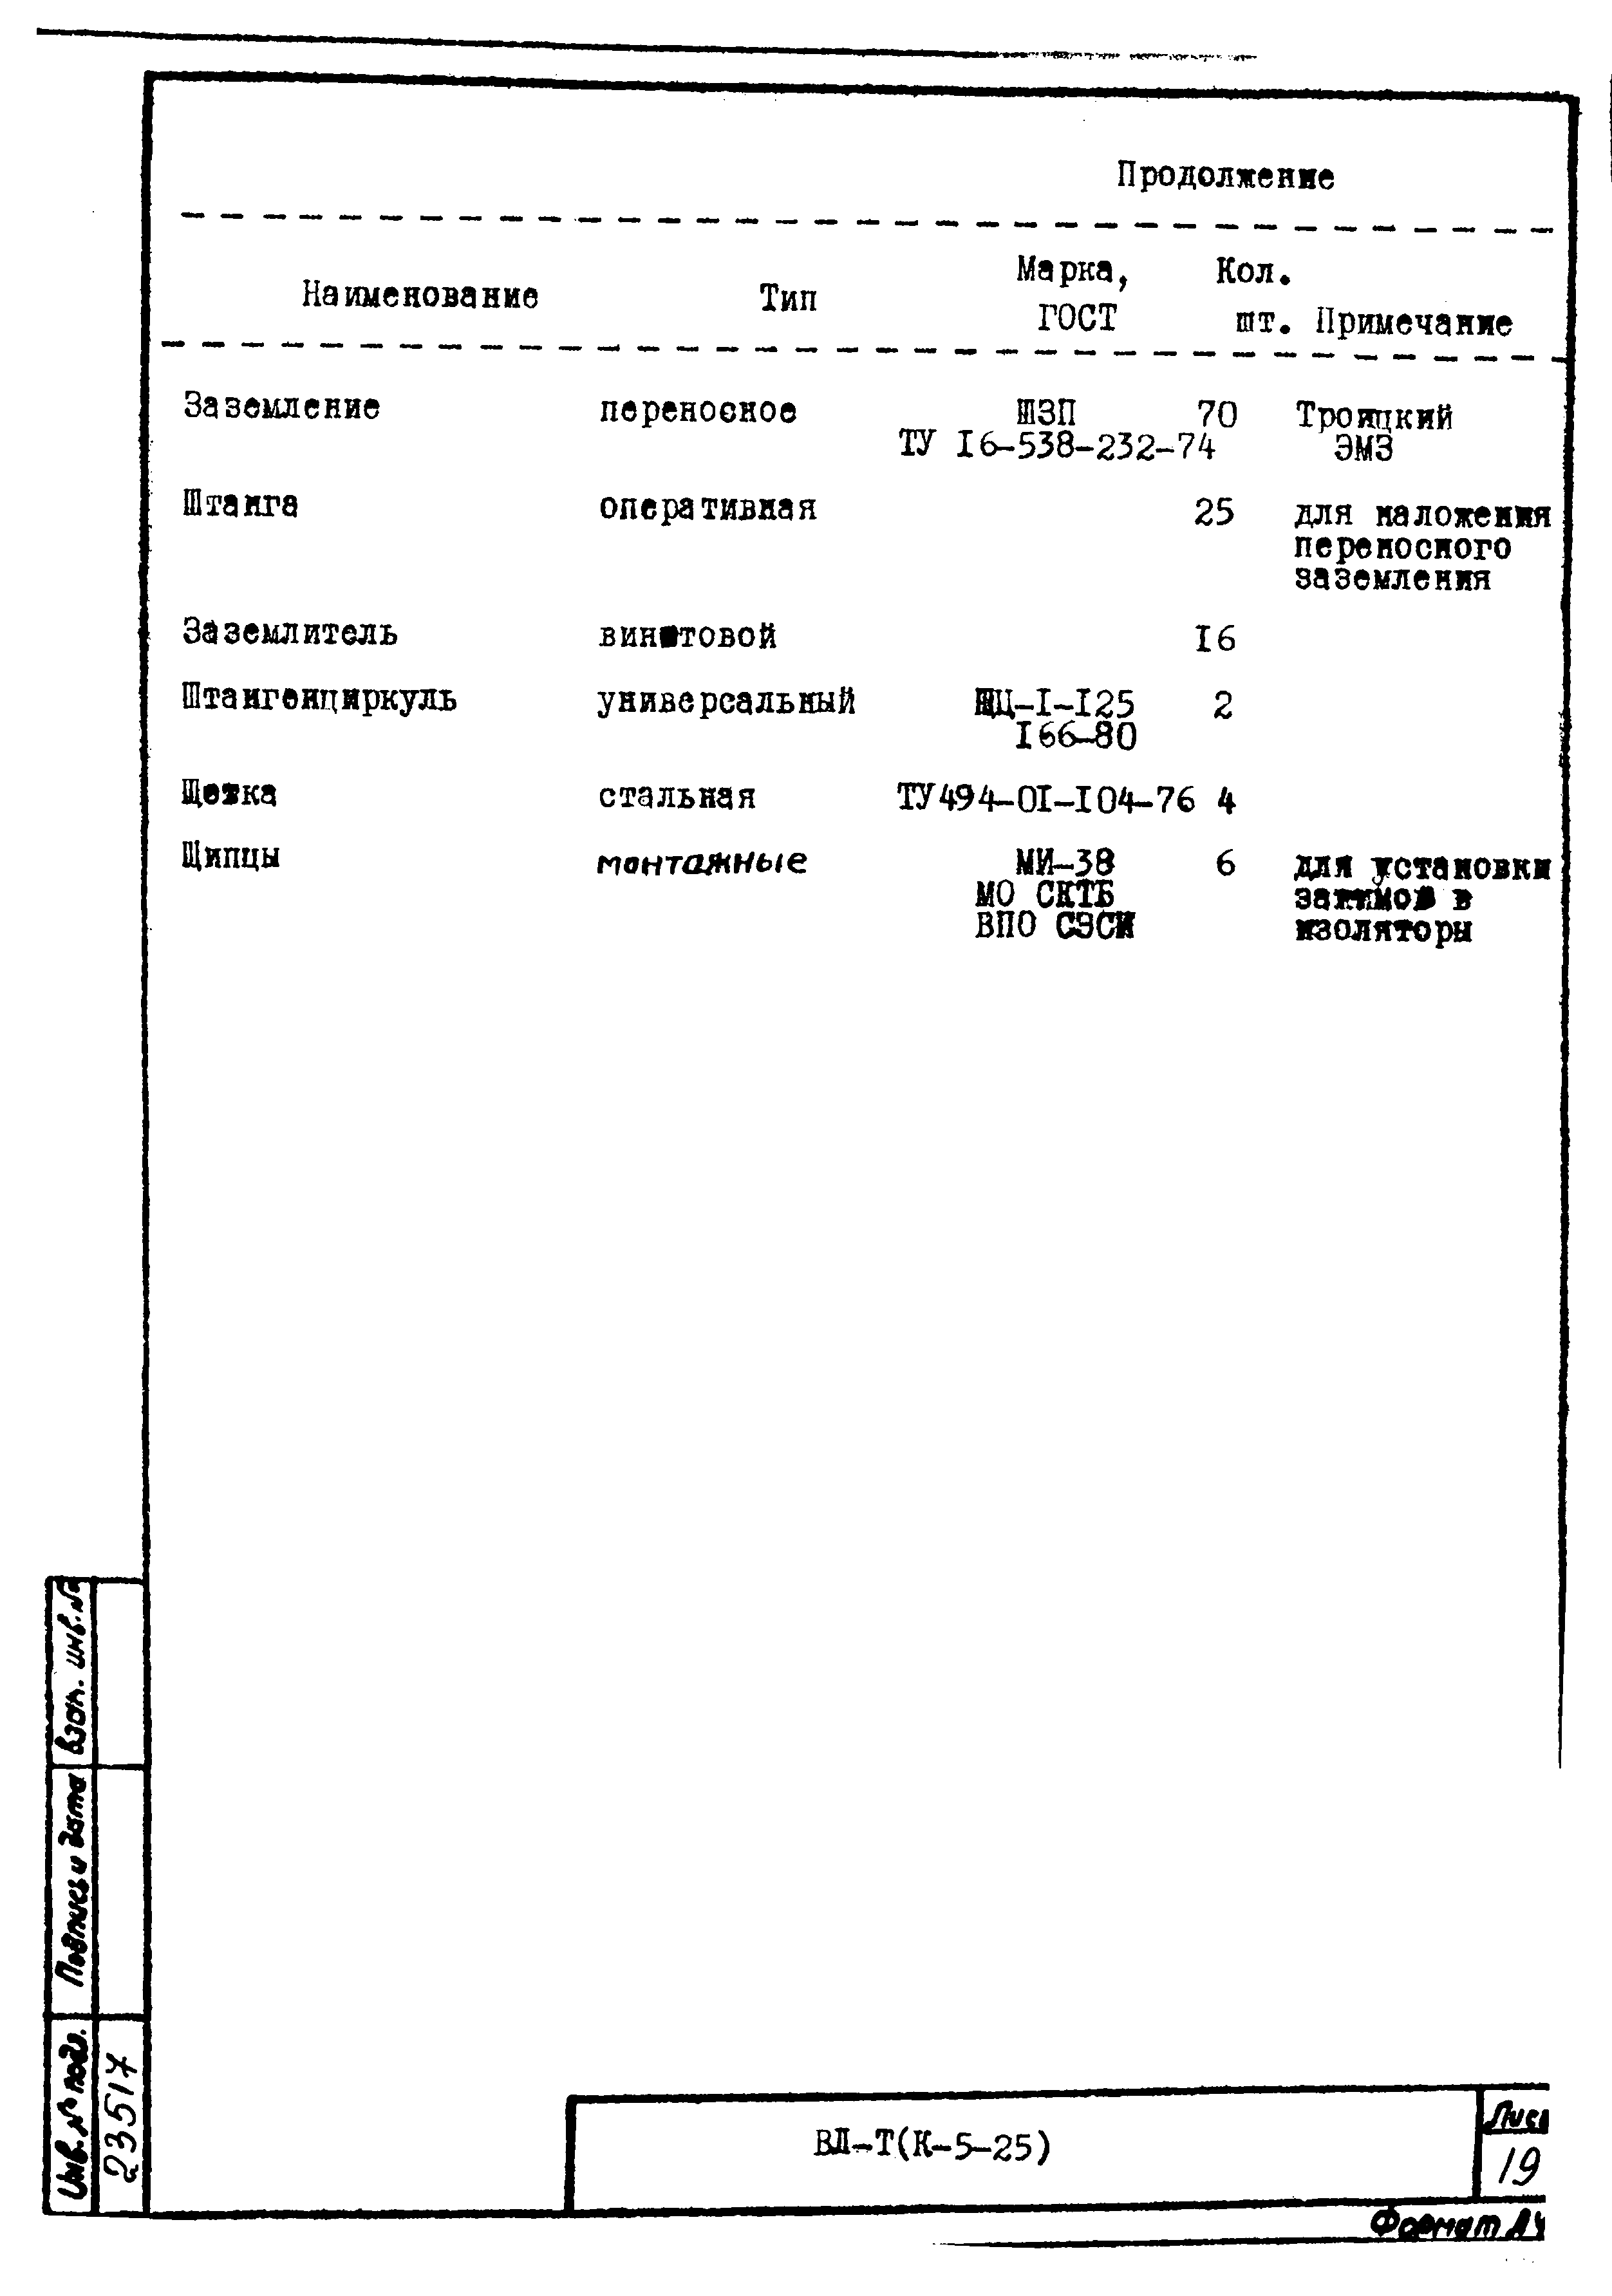 Технологическая карта К-5-25-6